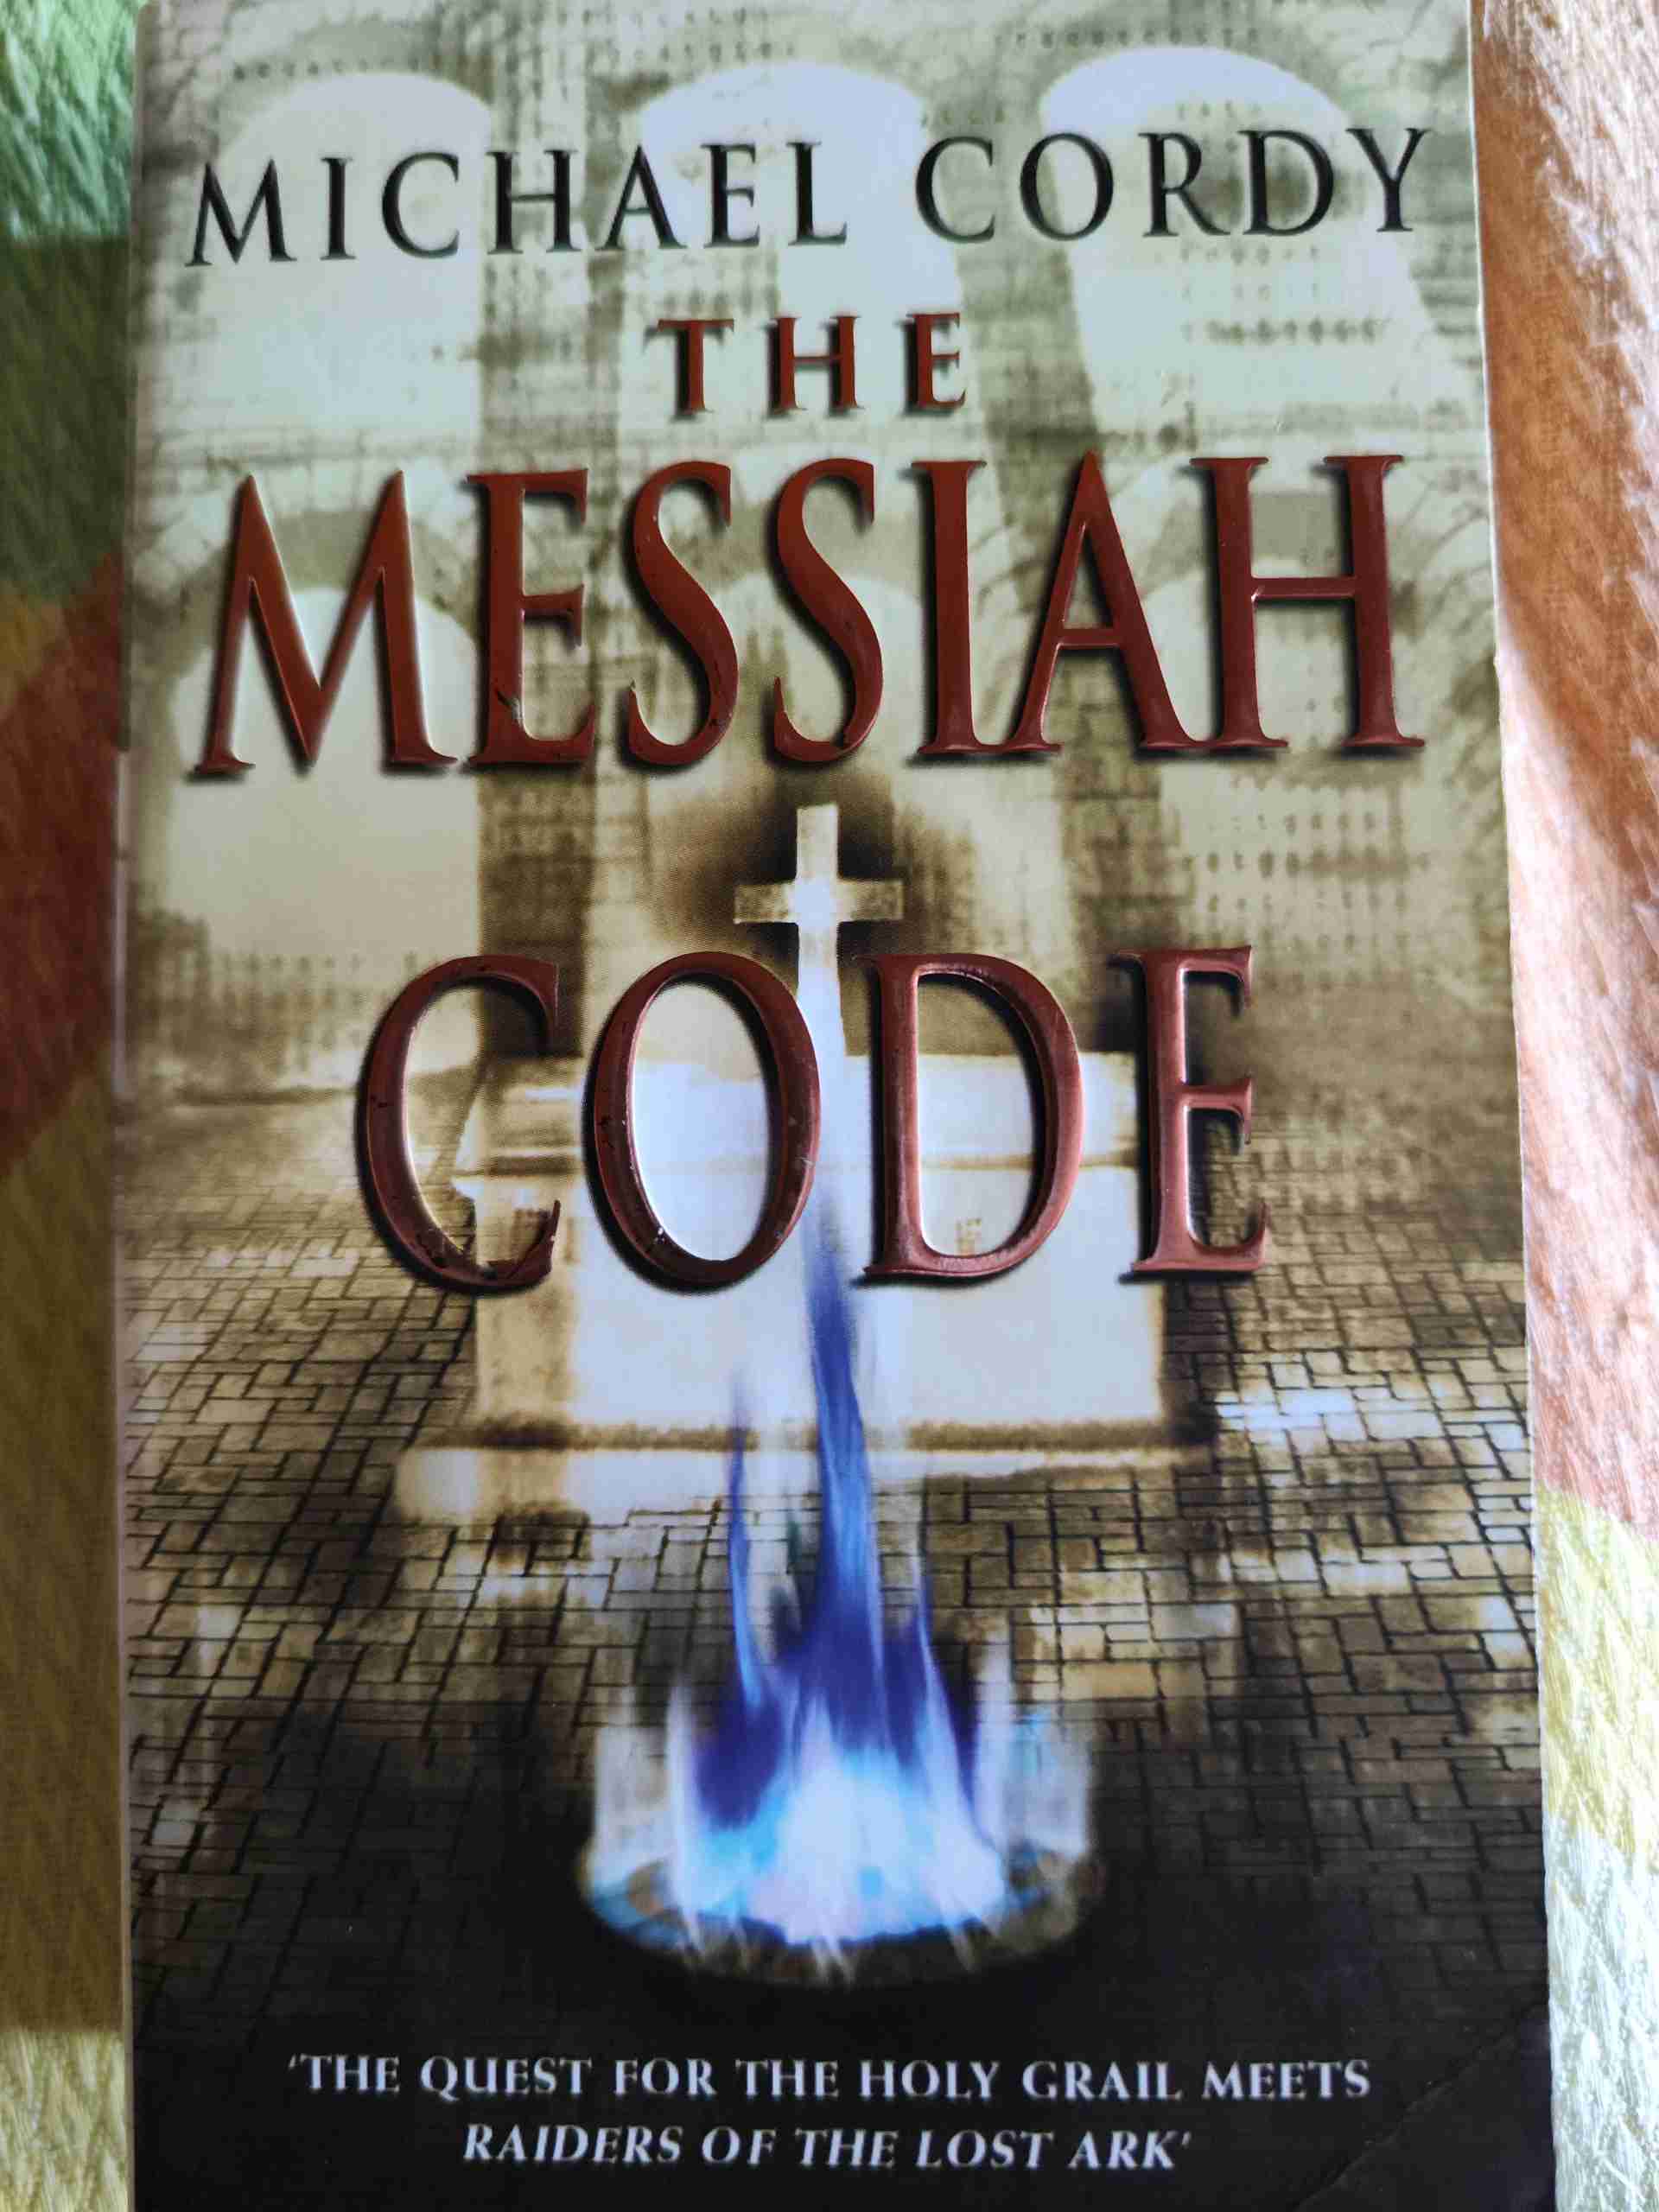 Messiah Code